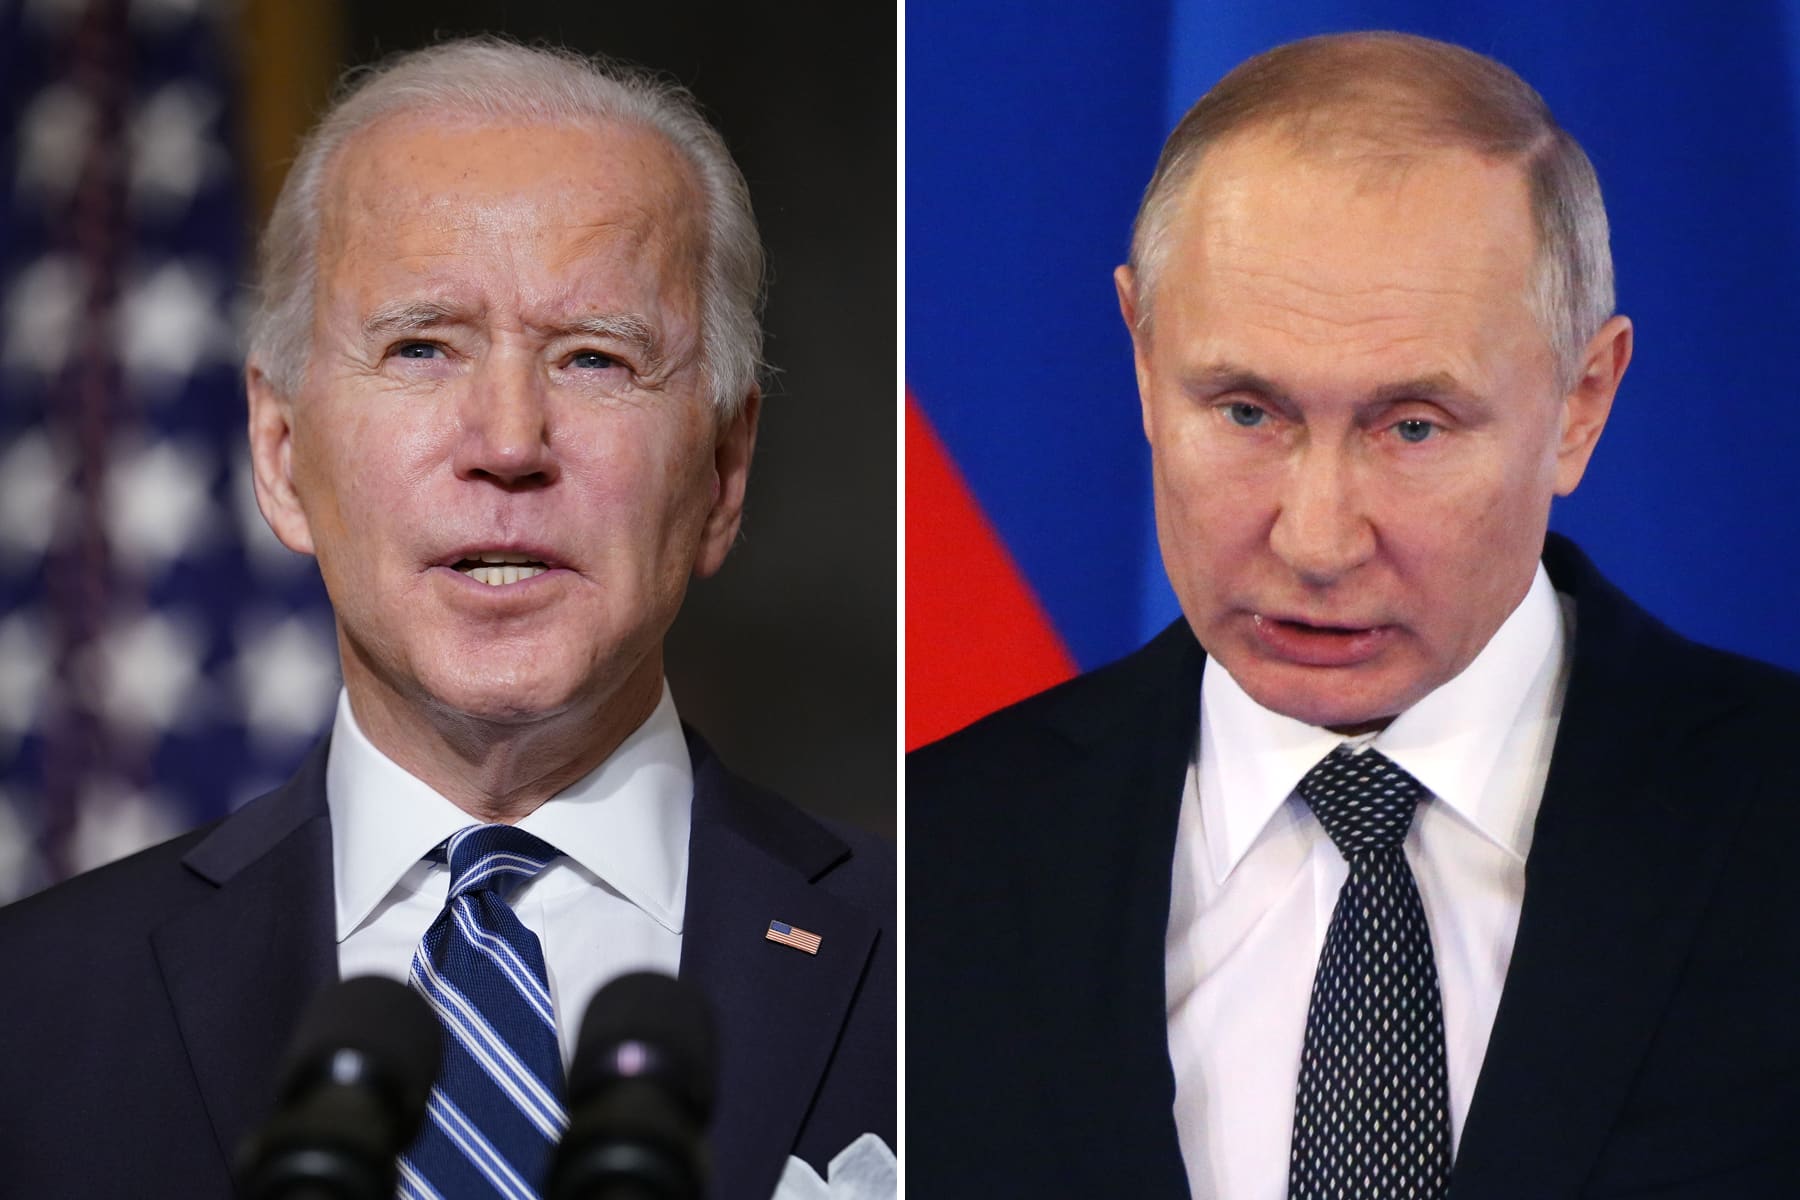 Biden se reunirá con el líder ruso Putin el 16 de junio en Ginebra, dice la Casa Blanca